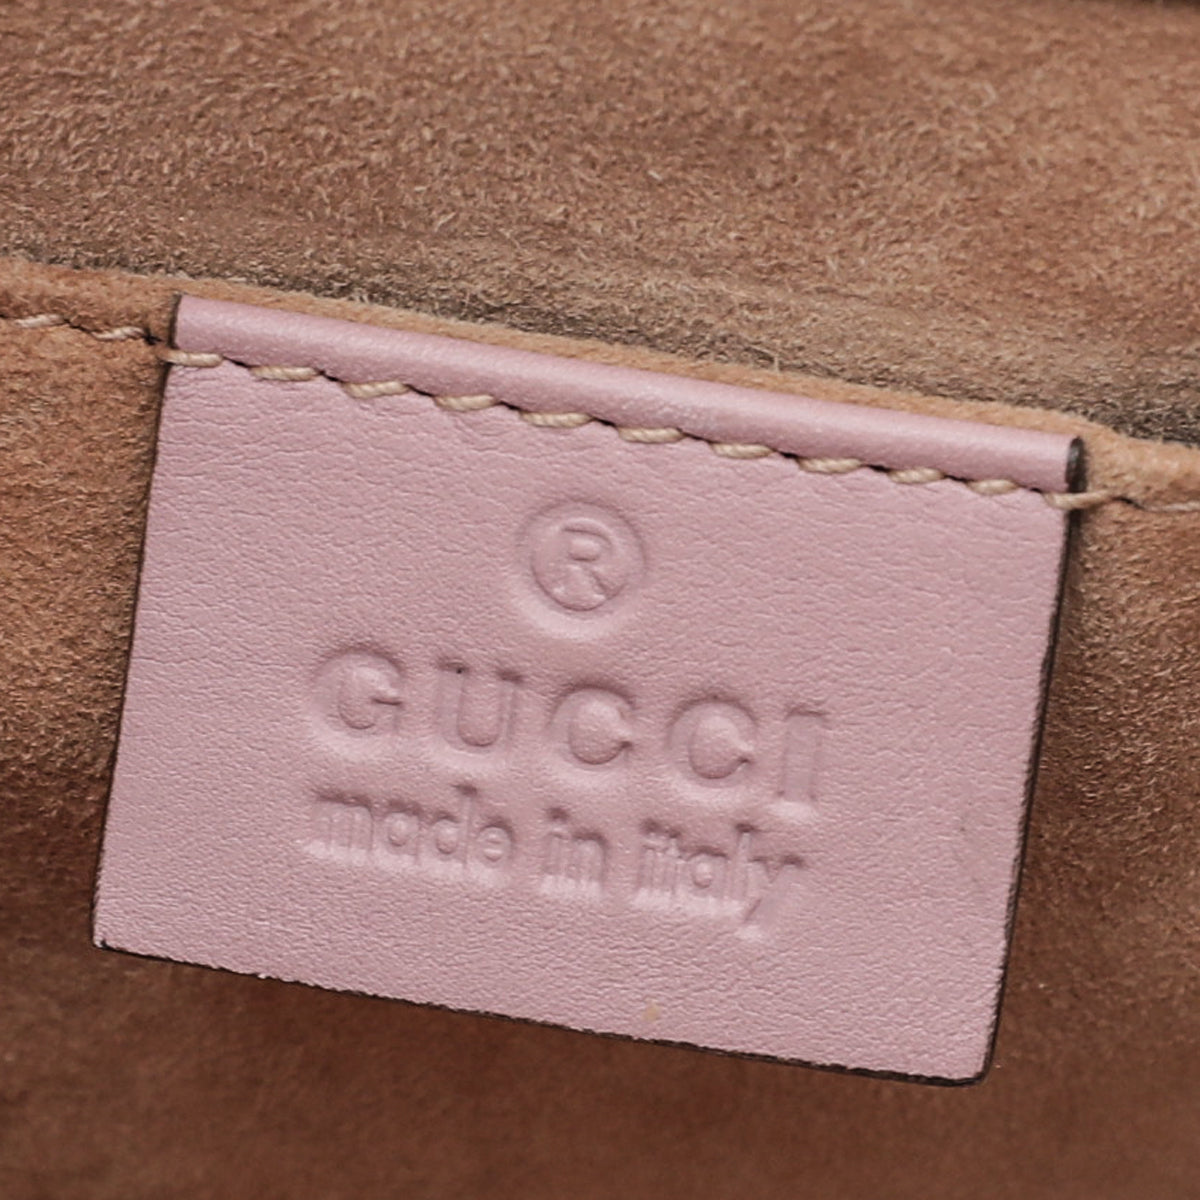 Gucci Bicolor Python Padlock Small Bag